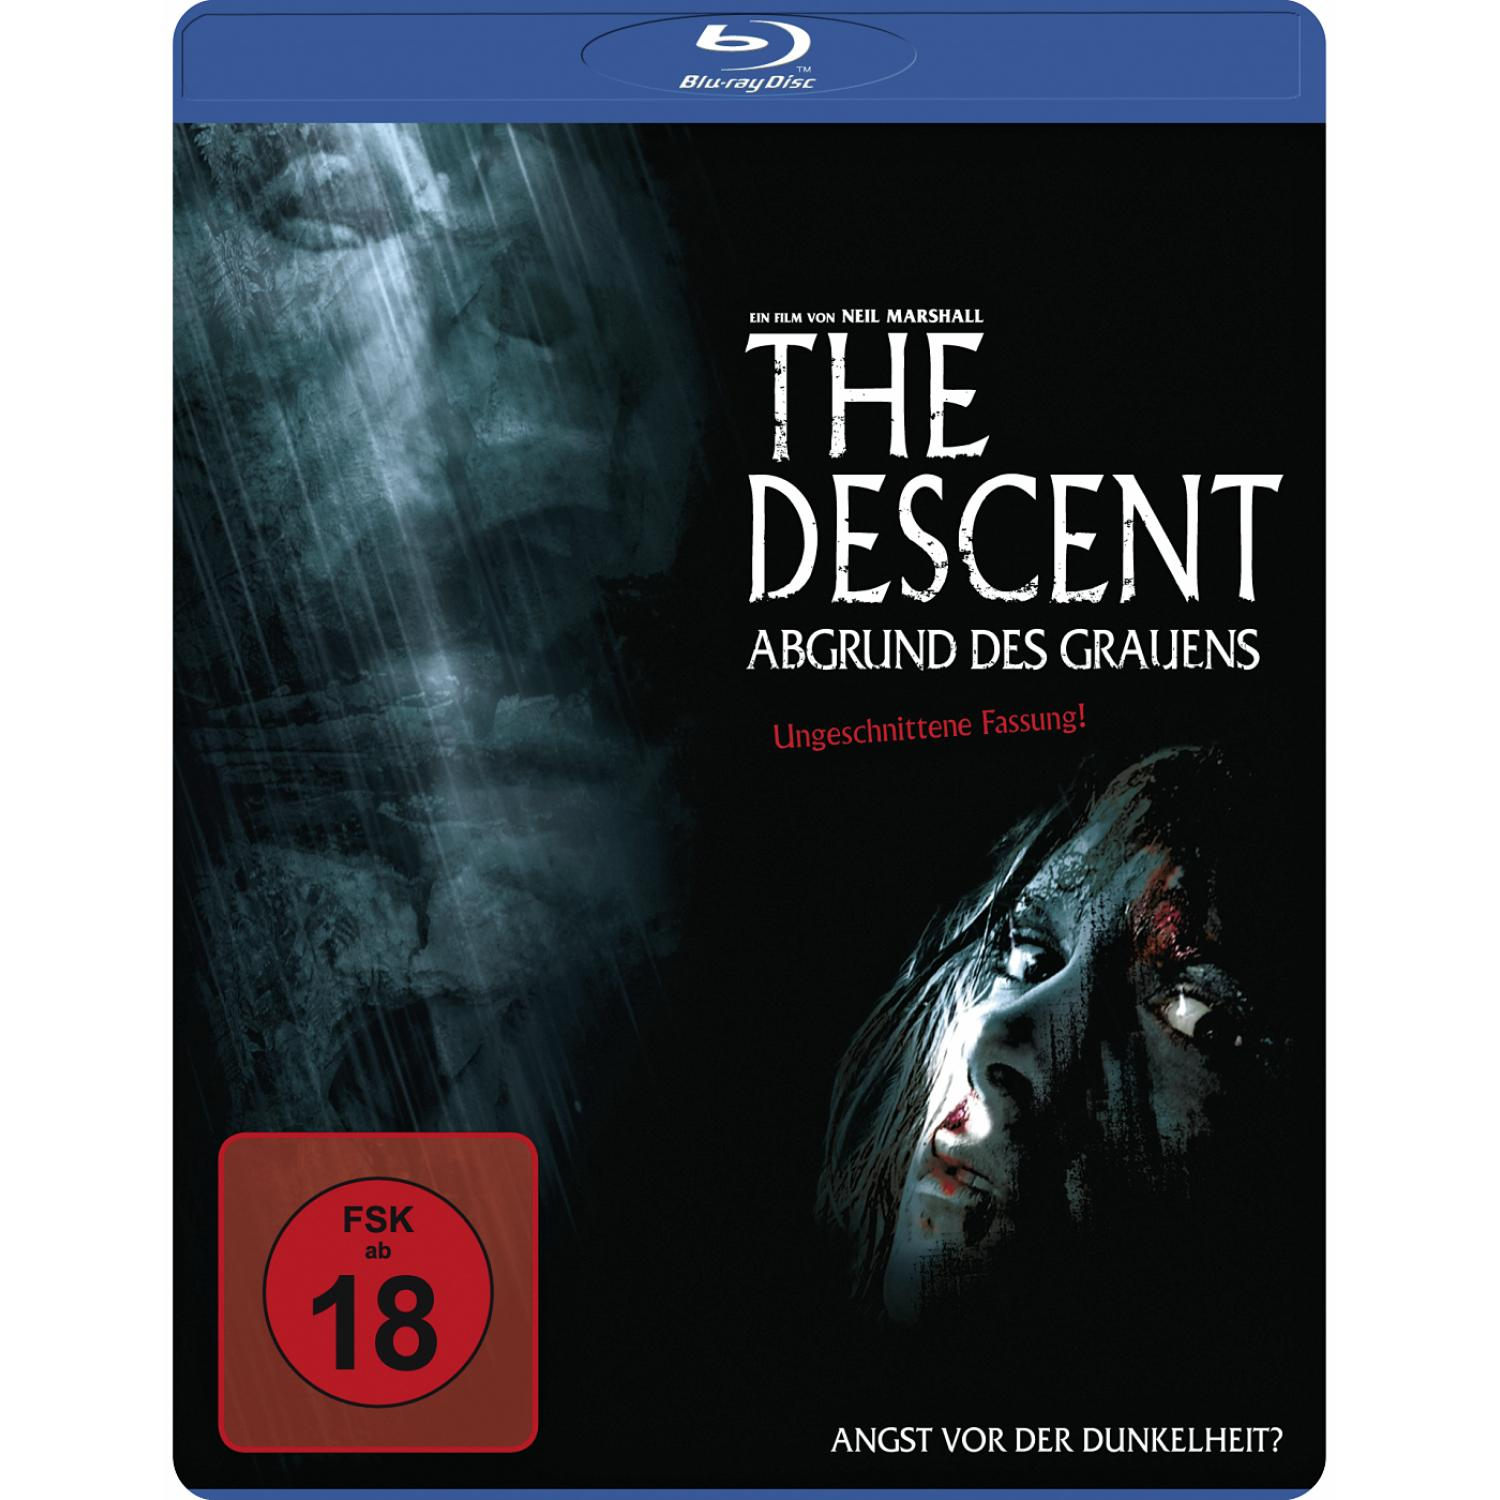 - Abgrund Descent Blu-ray Grauens des The